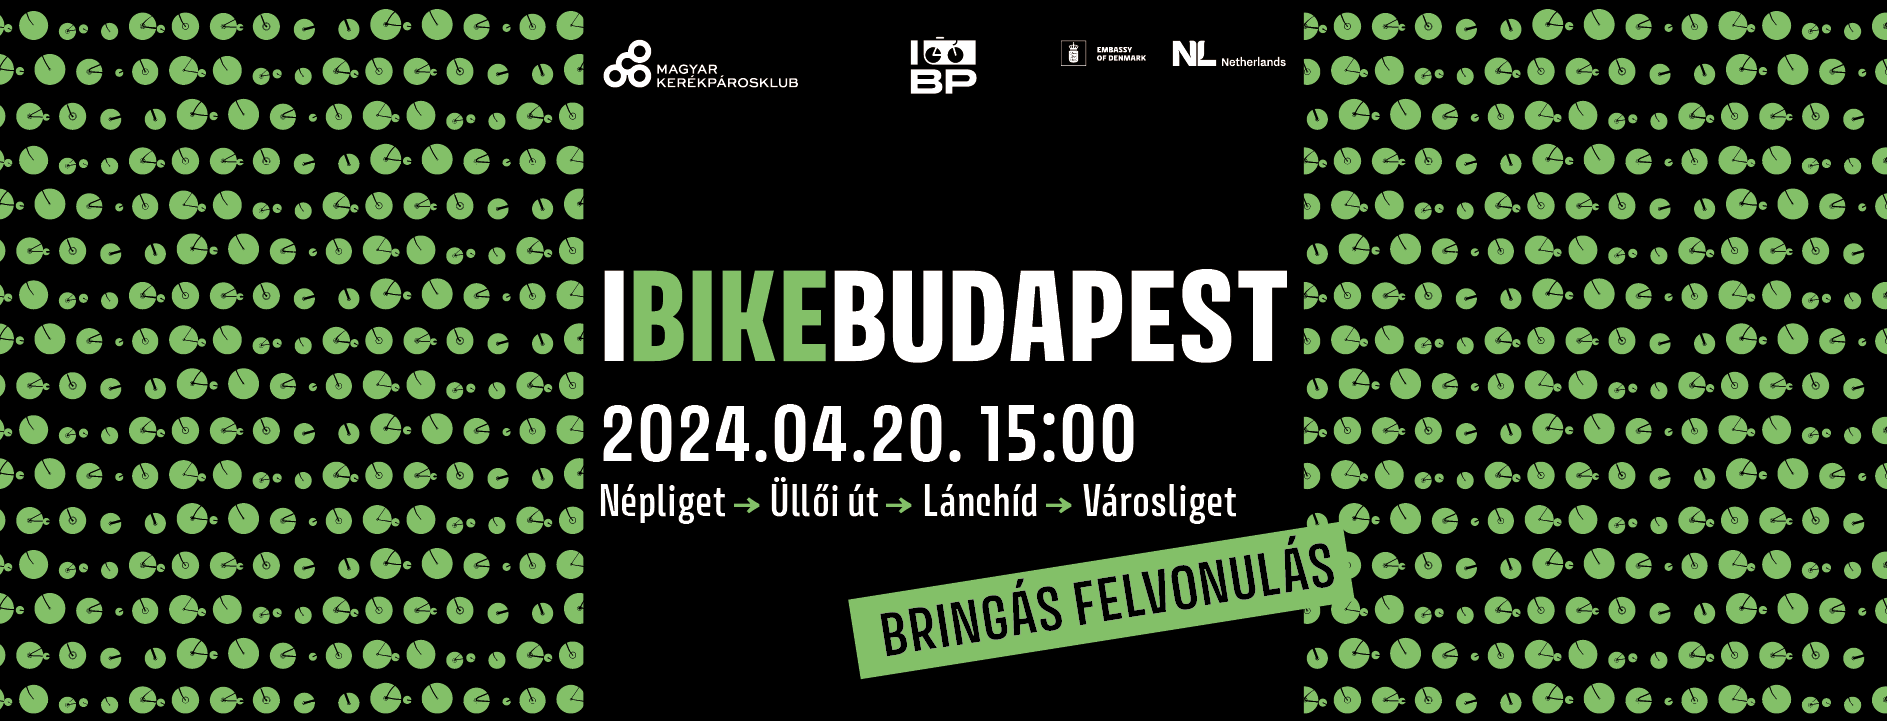 I bike Budapest MATRICAOSZTÁS - terjeszd a felvonulás HÍRÉT!